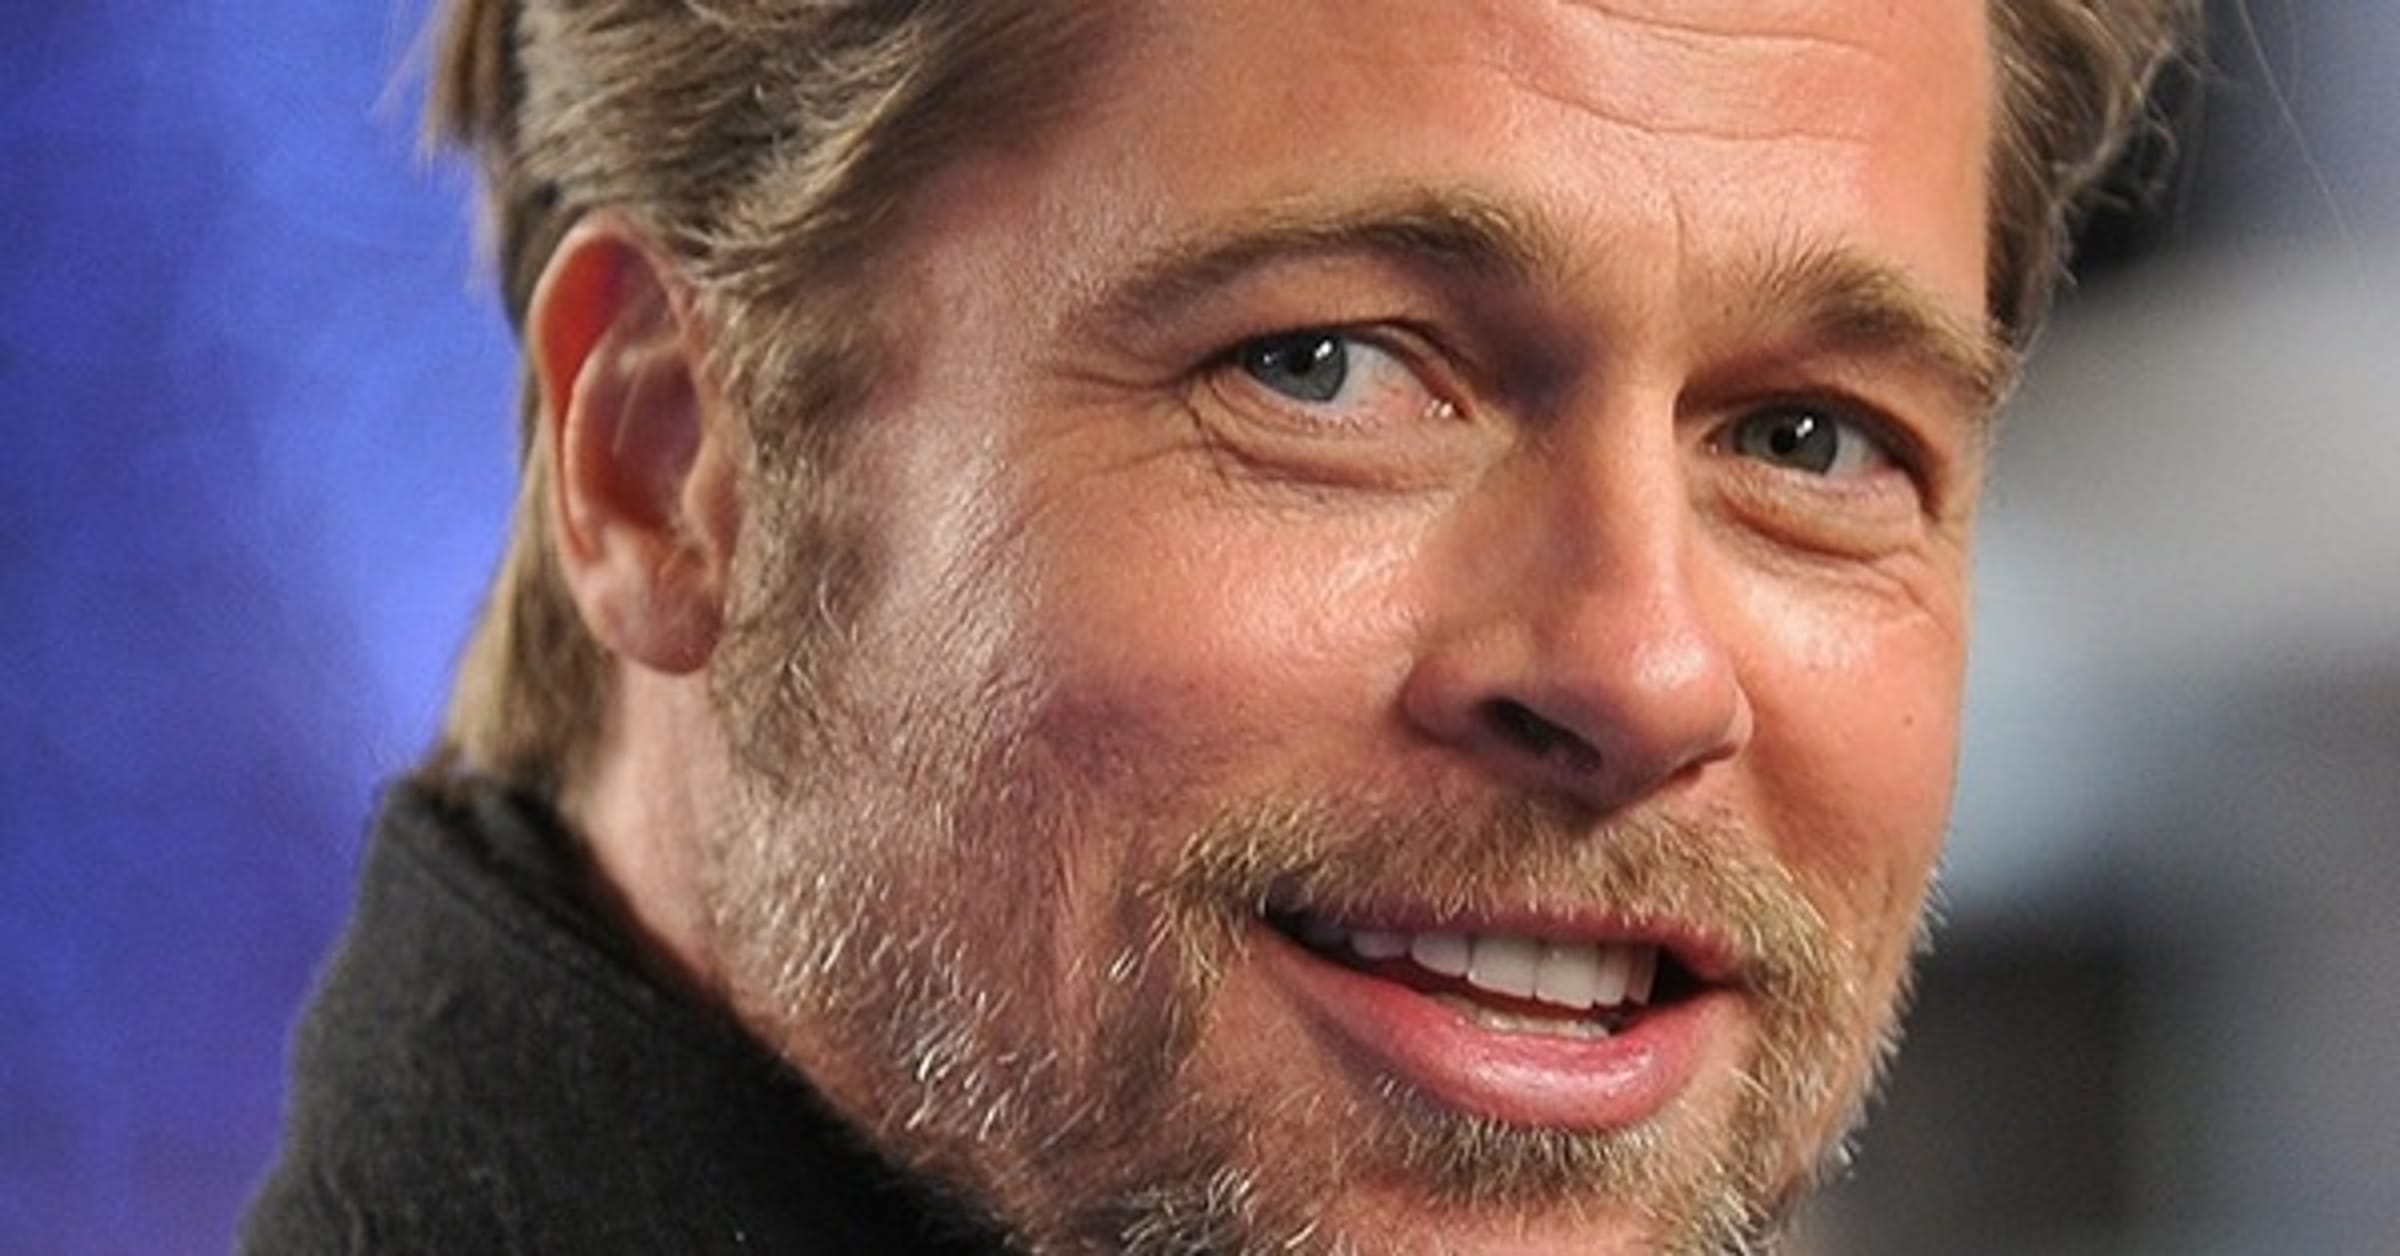 Brad Pitt's star-studded dating history